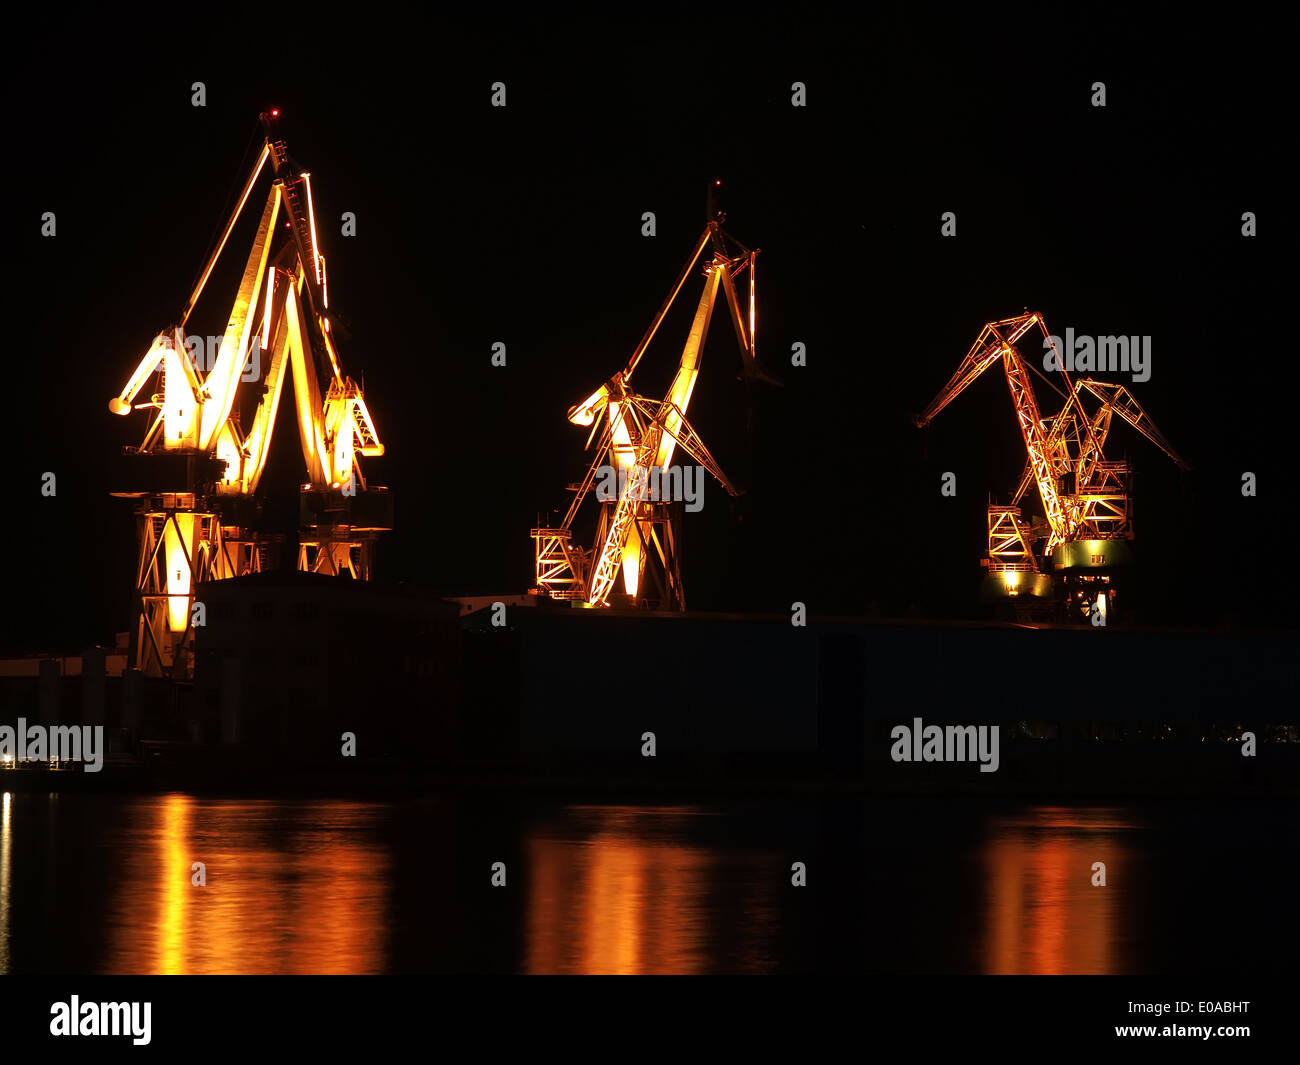 Werft-Krane-Beleuchtung mit Reflexion, Nachtaufnahme Stockfoto